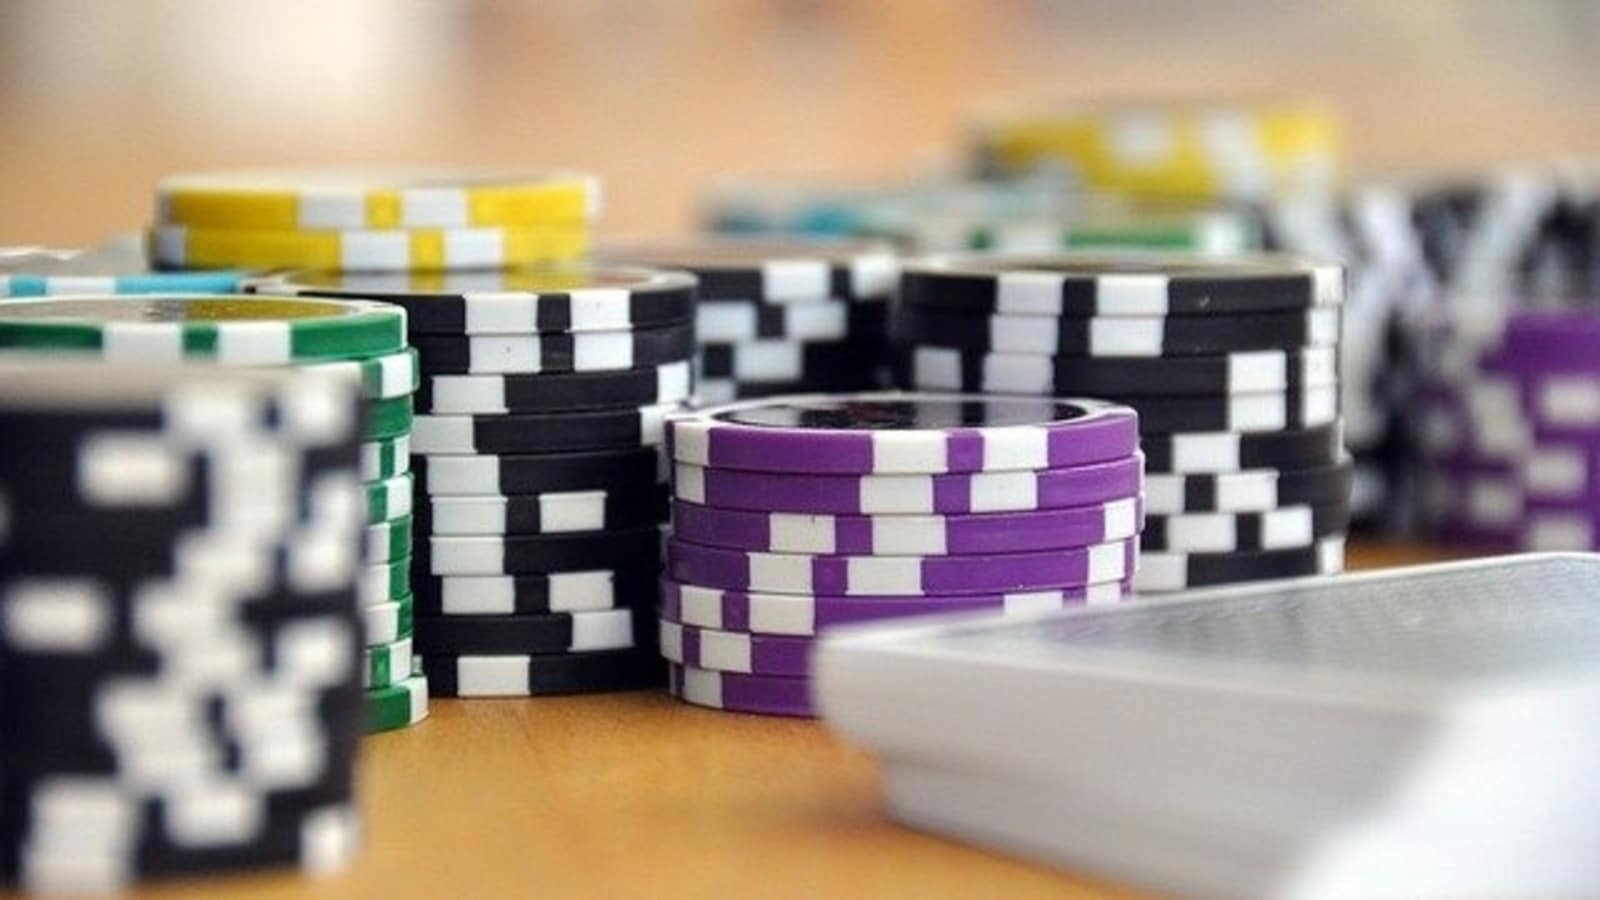 best online casino canada - The Six Figure Challenge